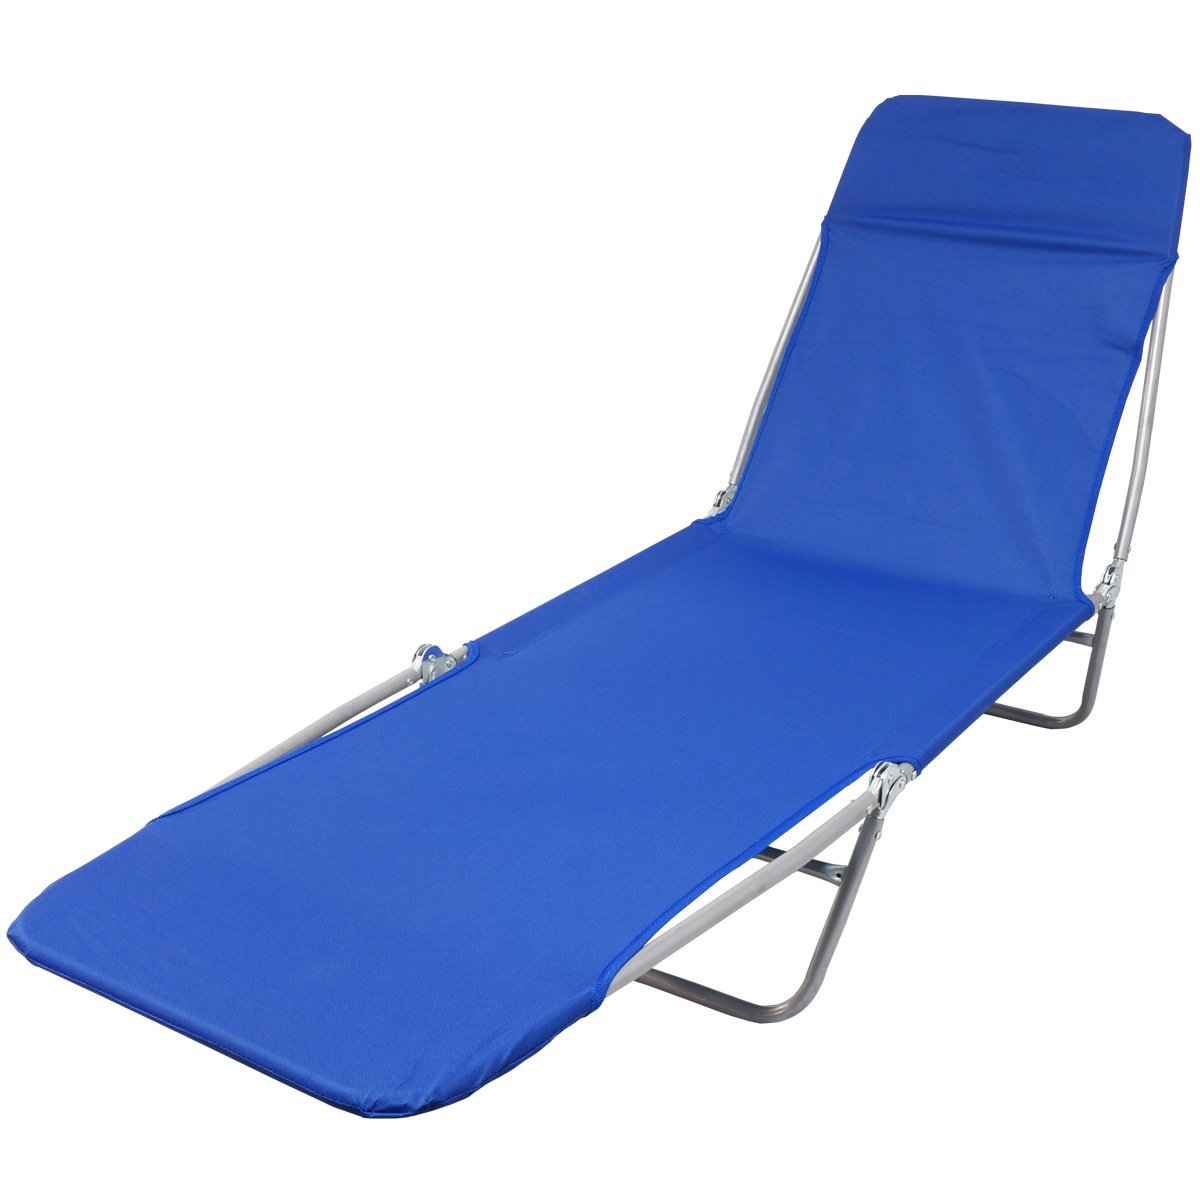 Cadeira Espreguiçadeira Dobrável 5 Posições Textline Praia Piscina Camping Importway IWCET-001 Azul  - 4